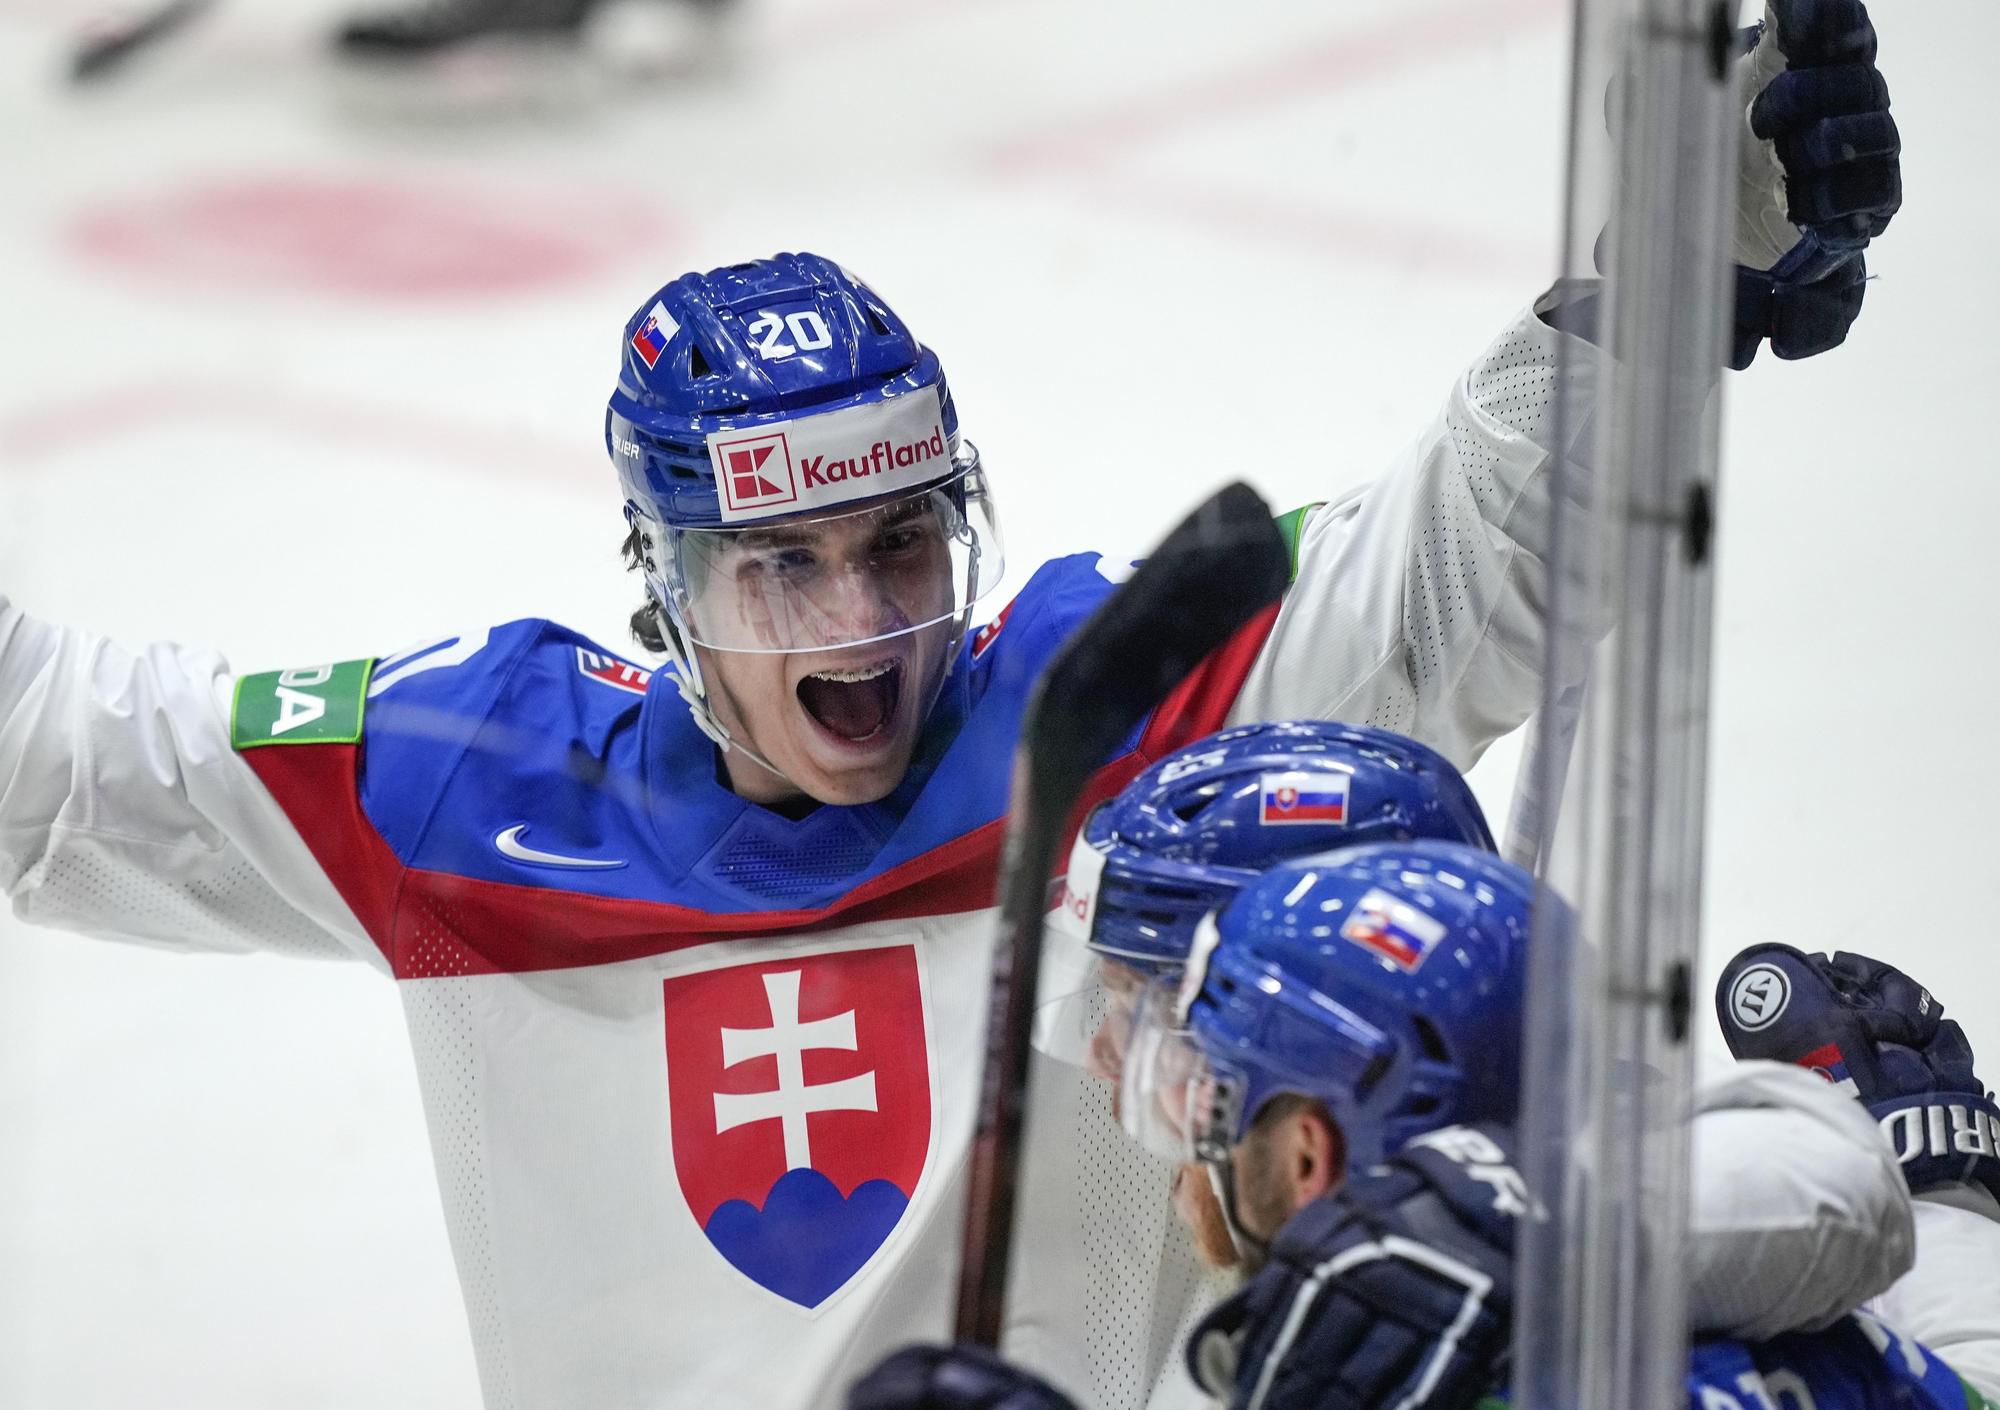 MS v hokeji 2022: Slovensko - Dánsko (Juraj Slafkovský sa teší z úvodného gólu)